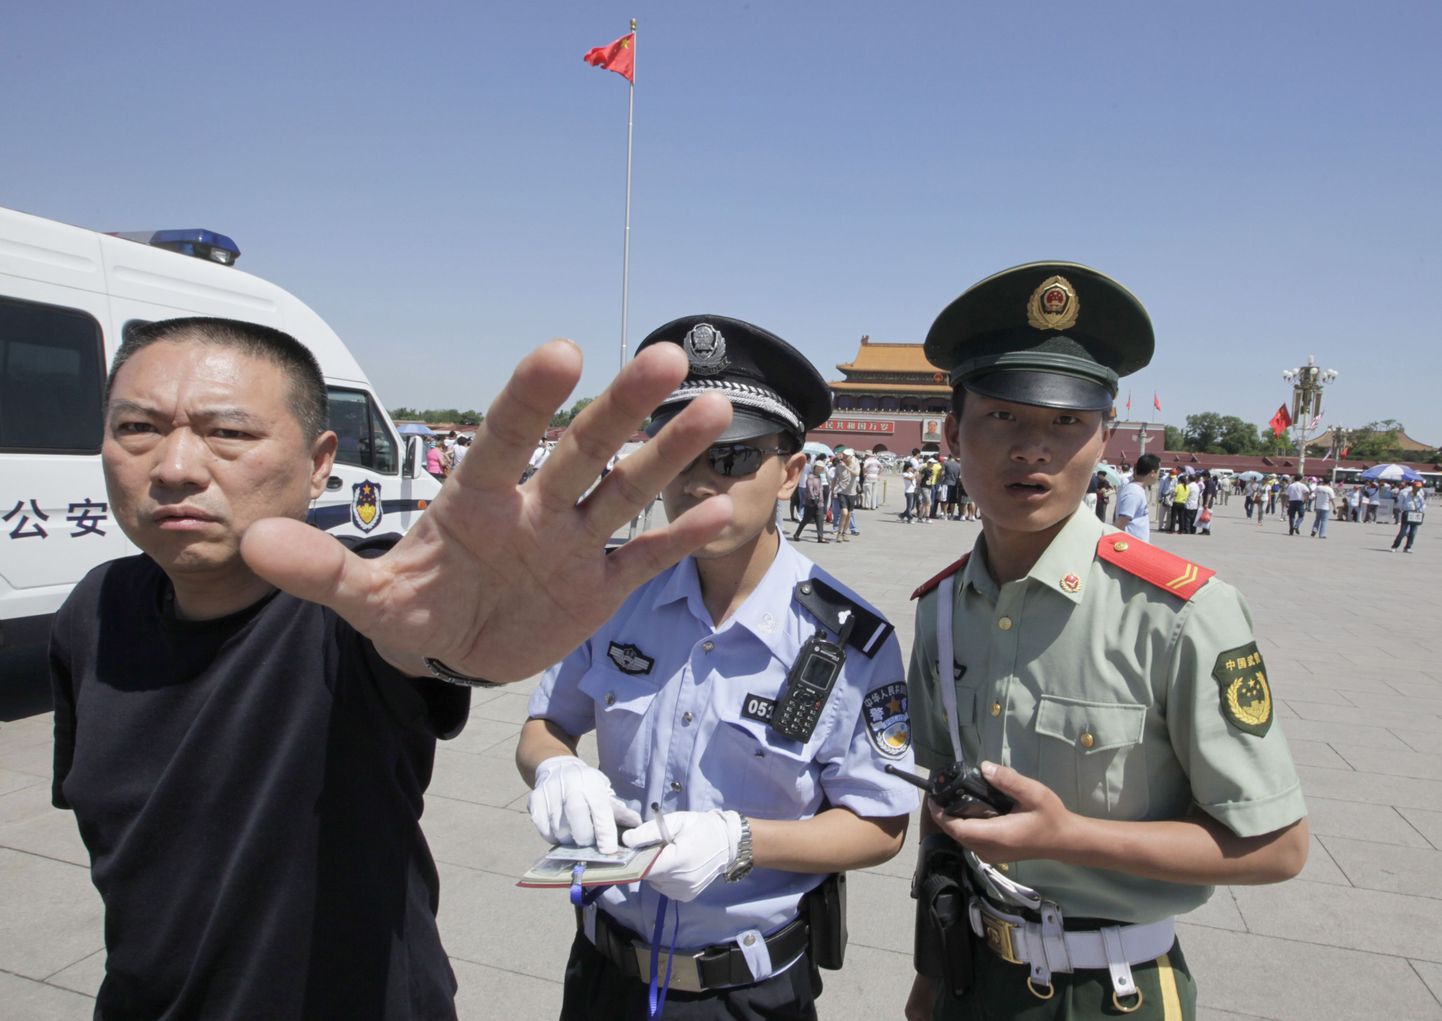 Hiina korrakaitsjad üritasid täna Tiananmeni väljakul takistada fotograafil oma tööd tegemast.